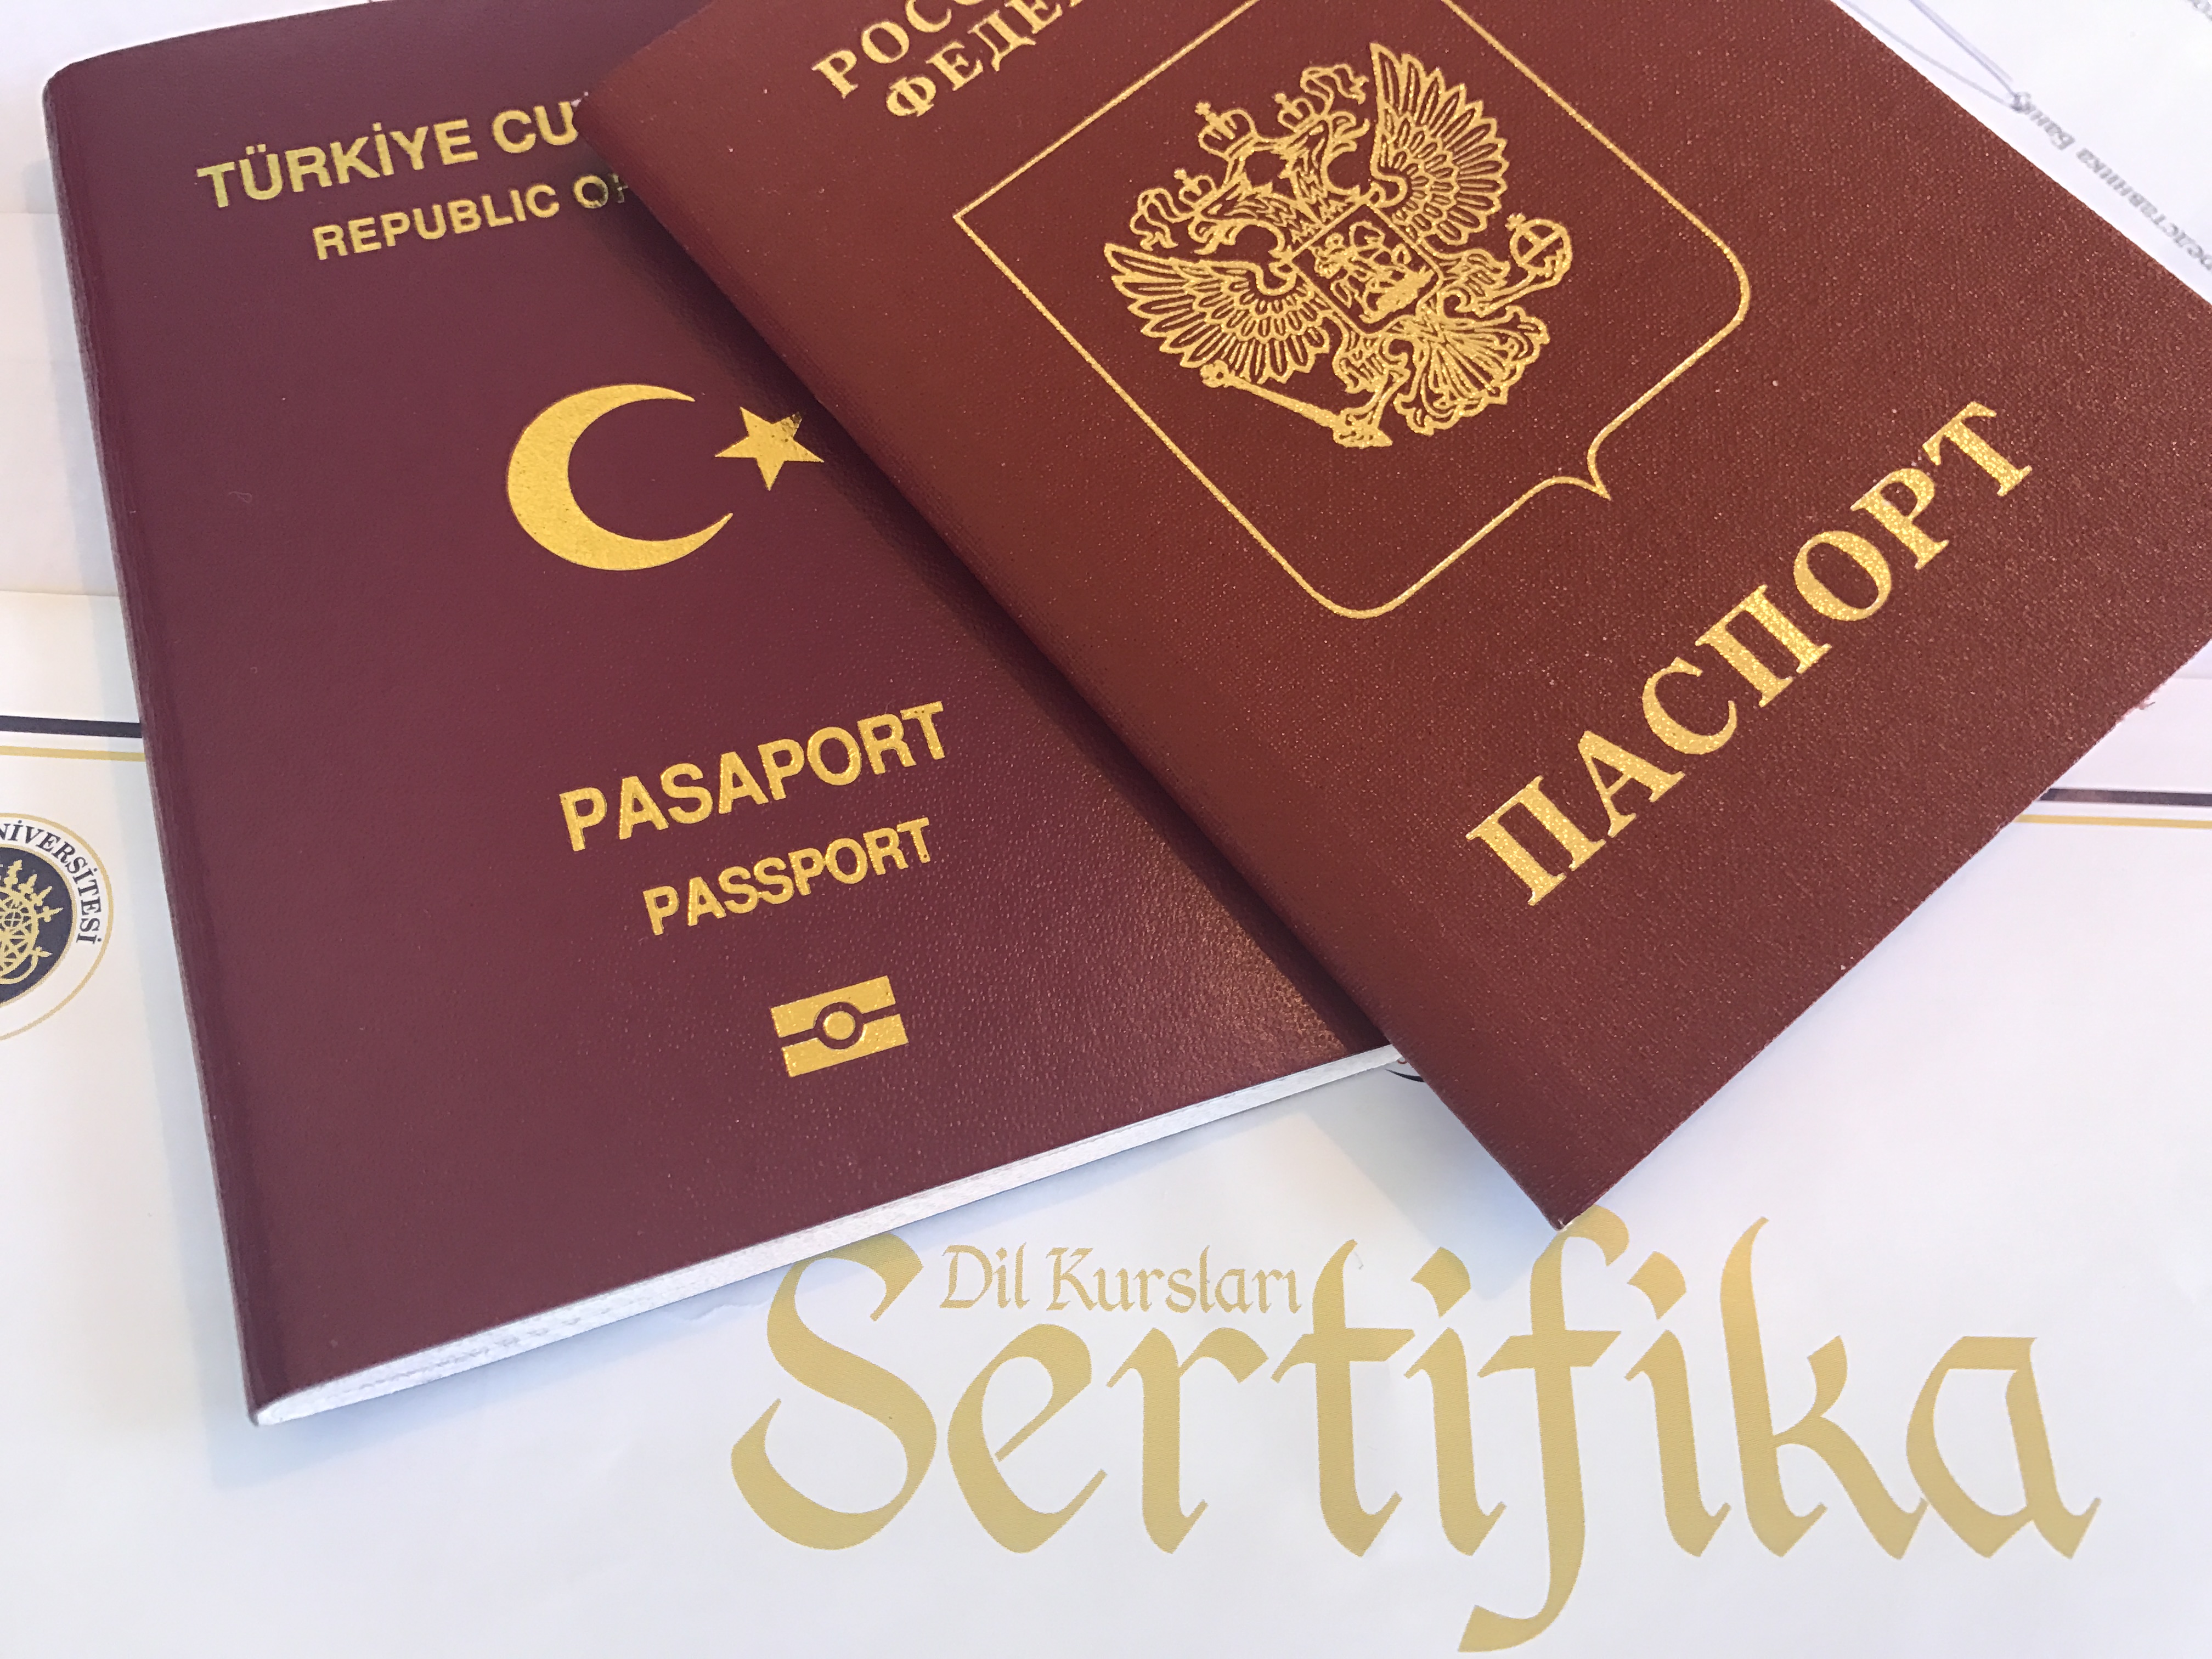  Можно ли поехать за кимликом (турецким паспортом) без супруга?